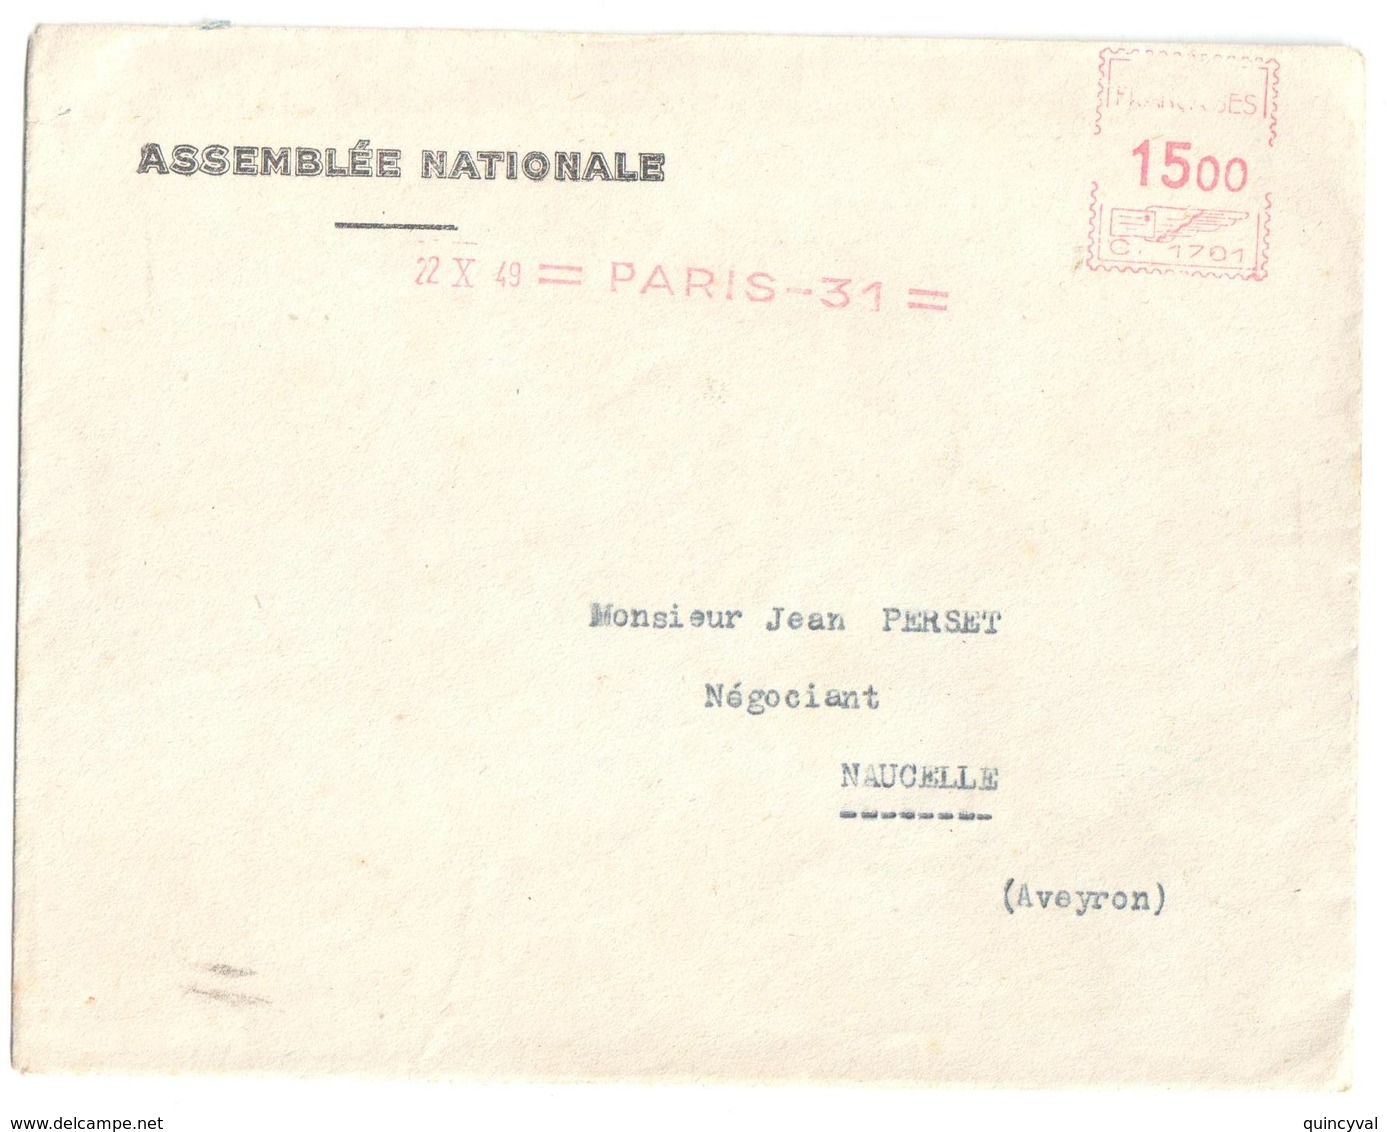 4563 ASSEMBLEE NATIONALE Lettre Entête 15 F Ob 1949 EMA Machine C Paris 31 Dest NACELLE Aveyron Courrier "amusant" - EMA (Printer Machine)